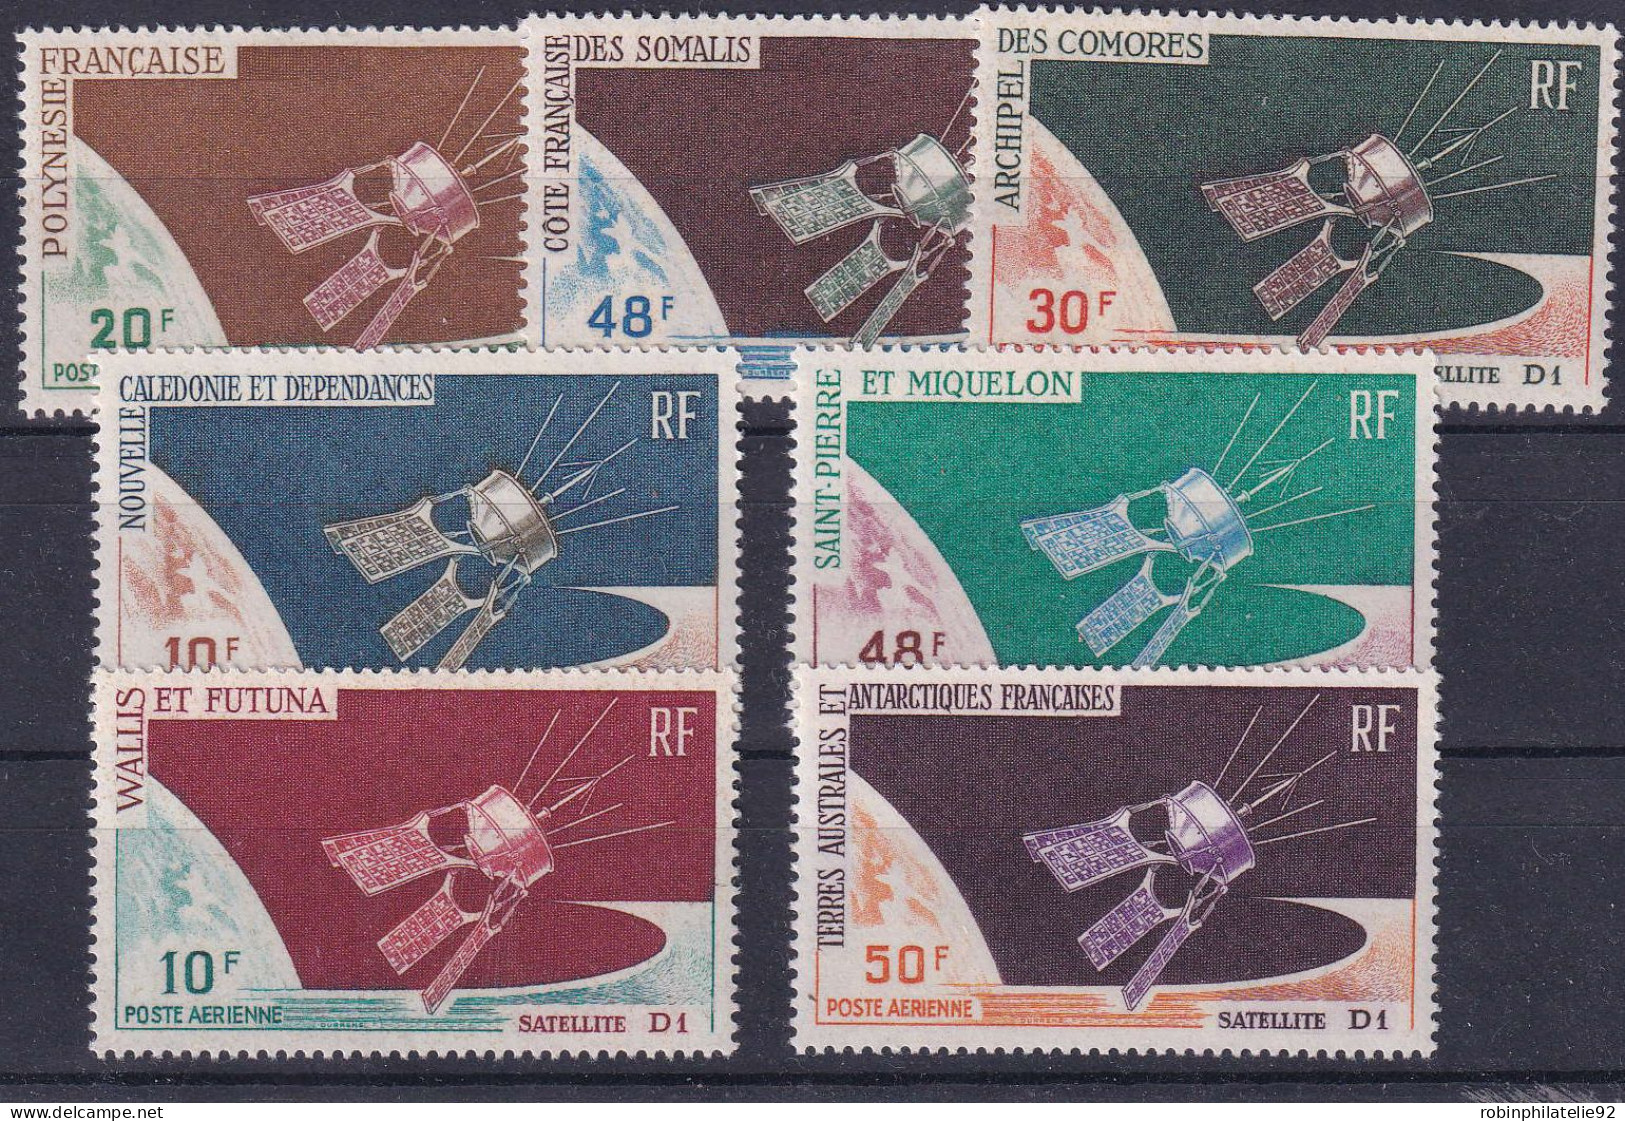 Séries Coloniales1966 Satelite D1  7 Timbres Qualité:** Cote:123 - Unclassified